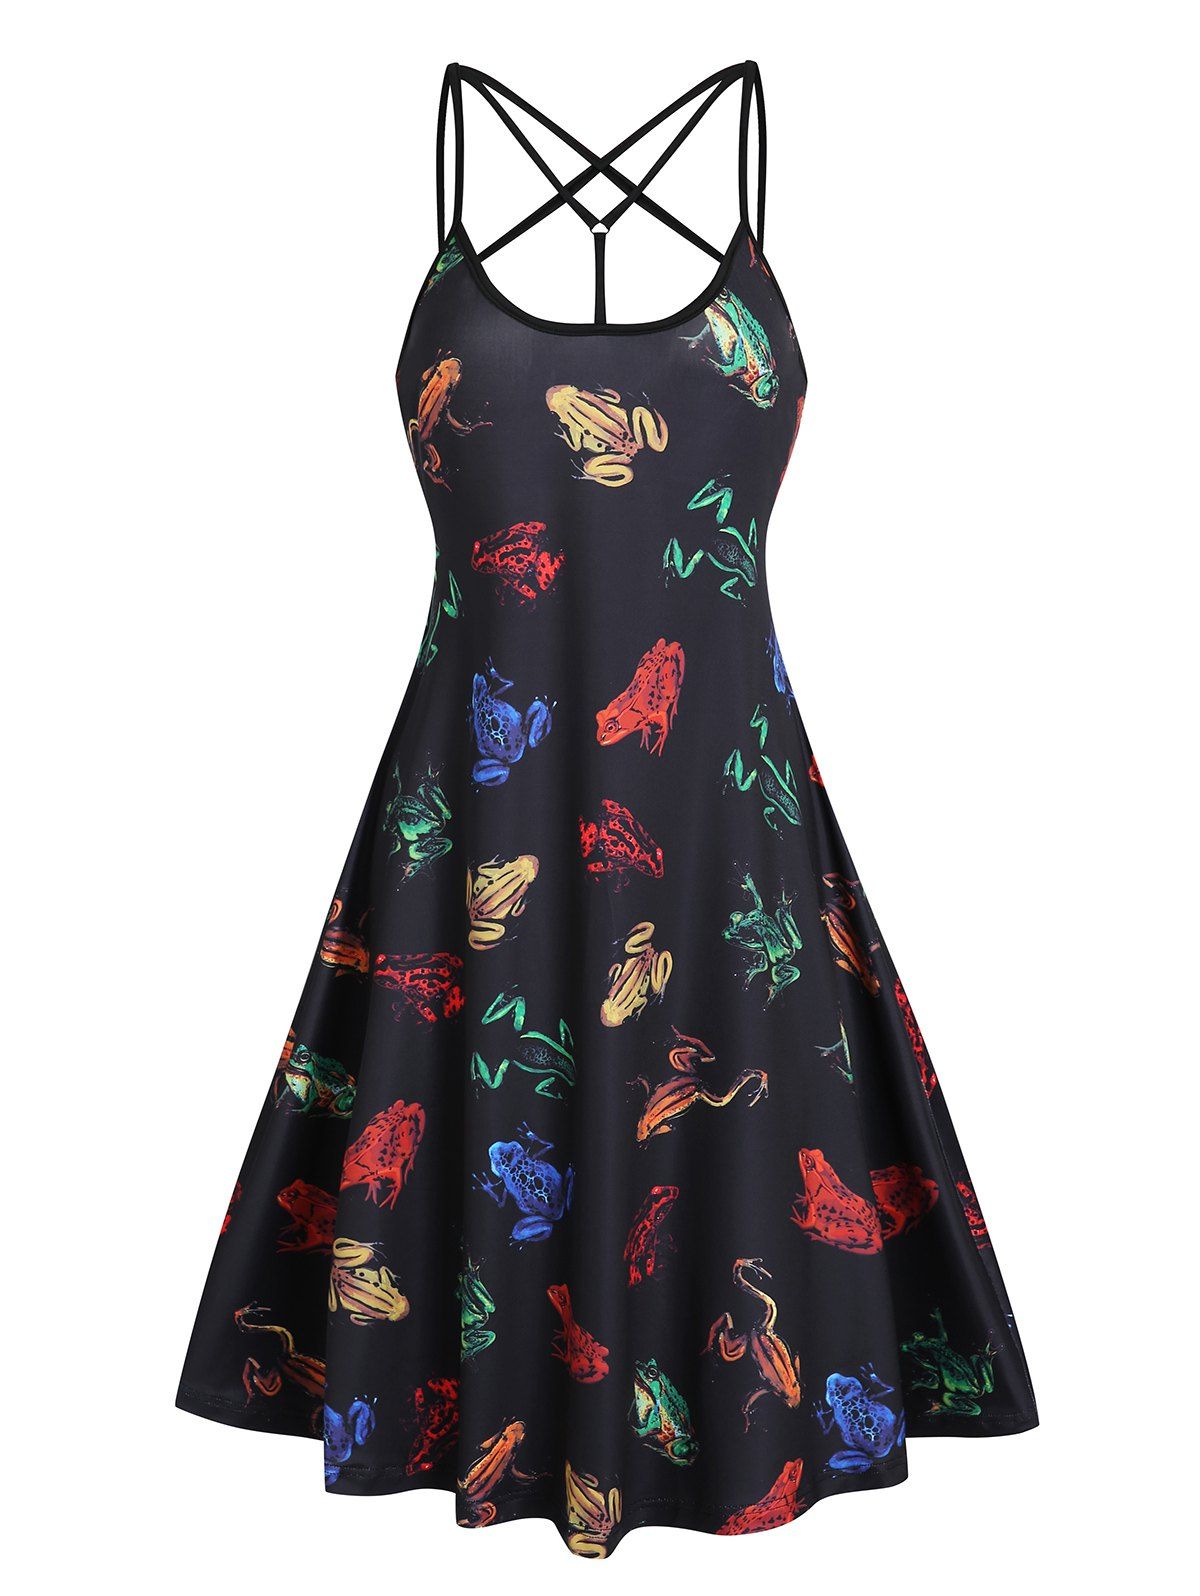 Allover 3D Frog Print Criss Cross Cami A Line Dress - BLACK L